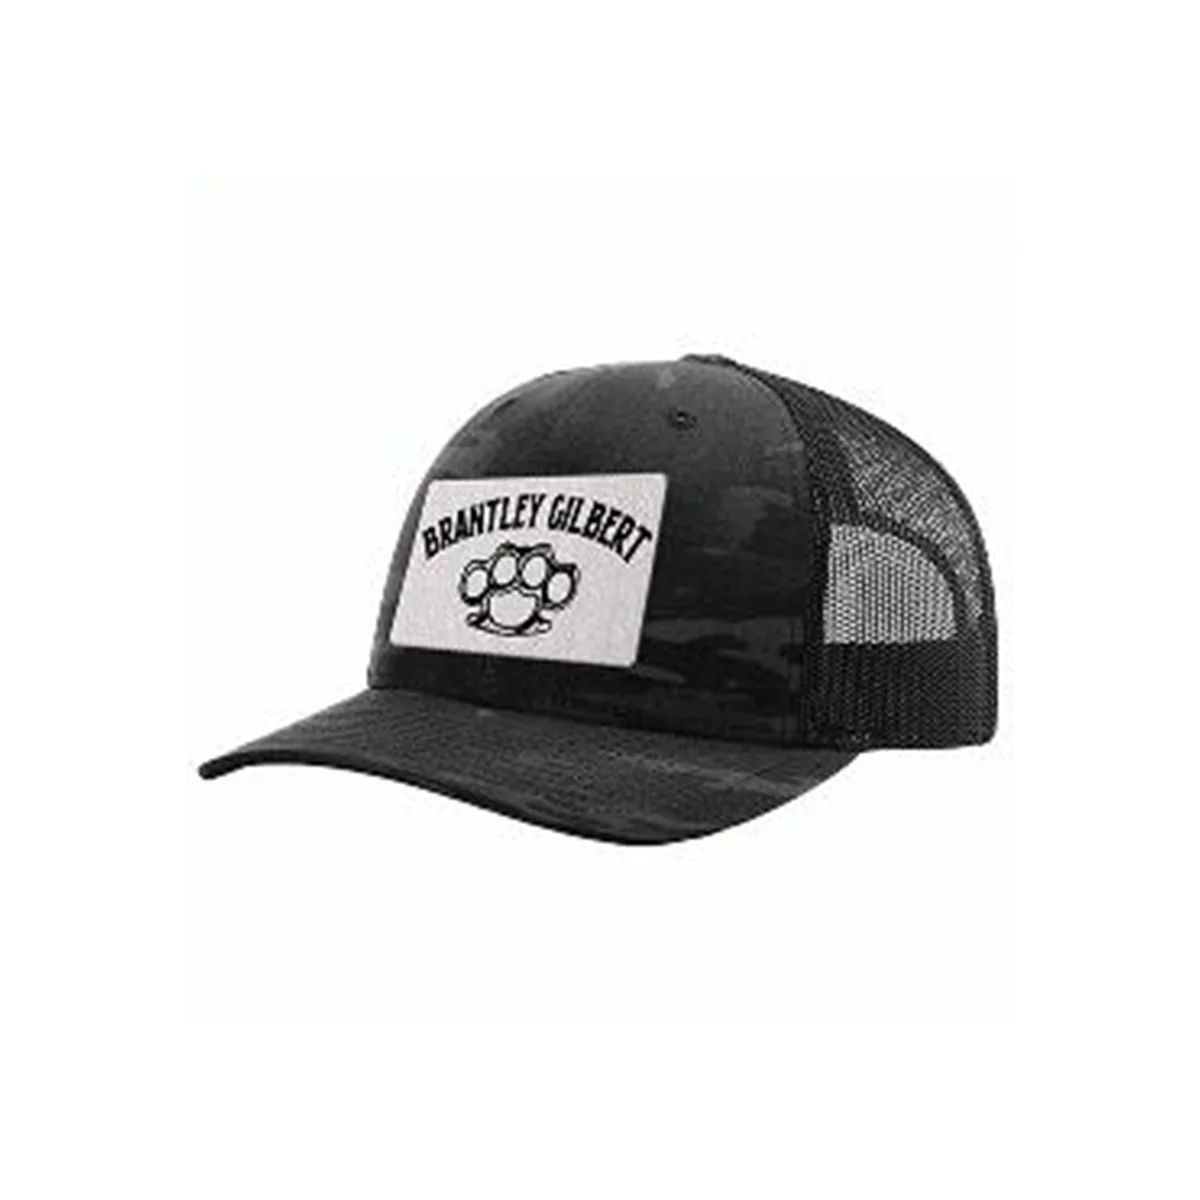 Knuckles Dark Camo Tour Trucker Hat